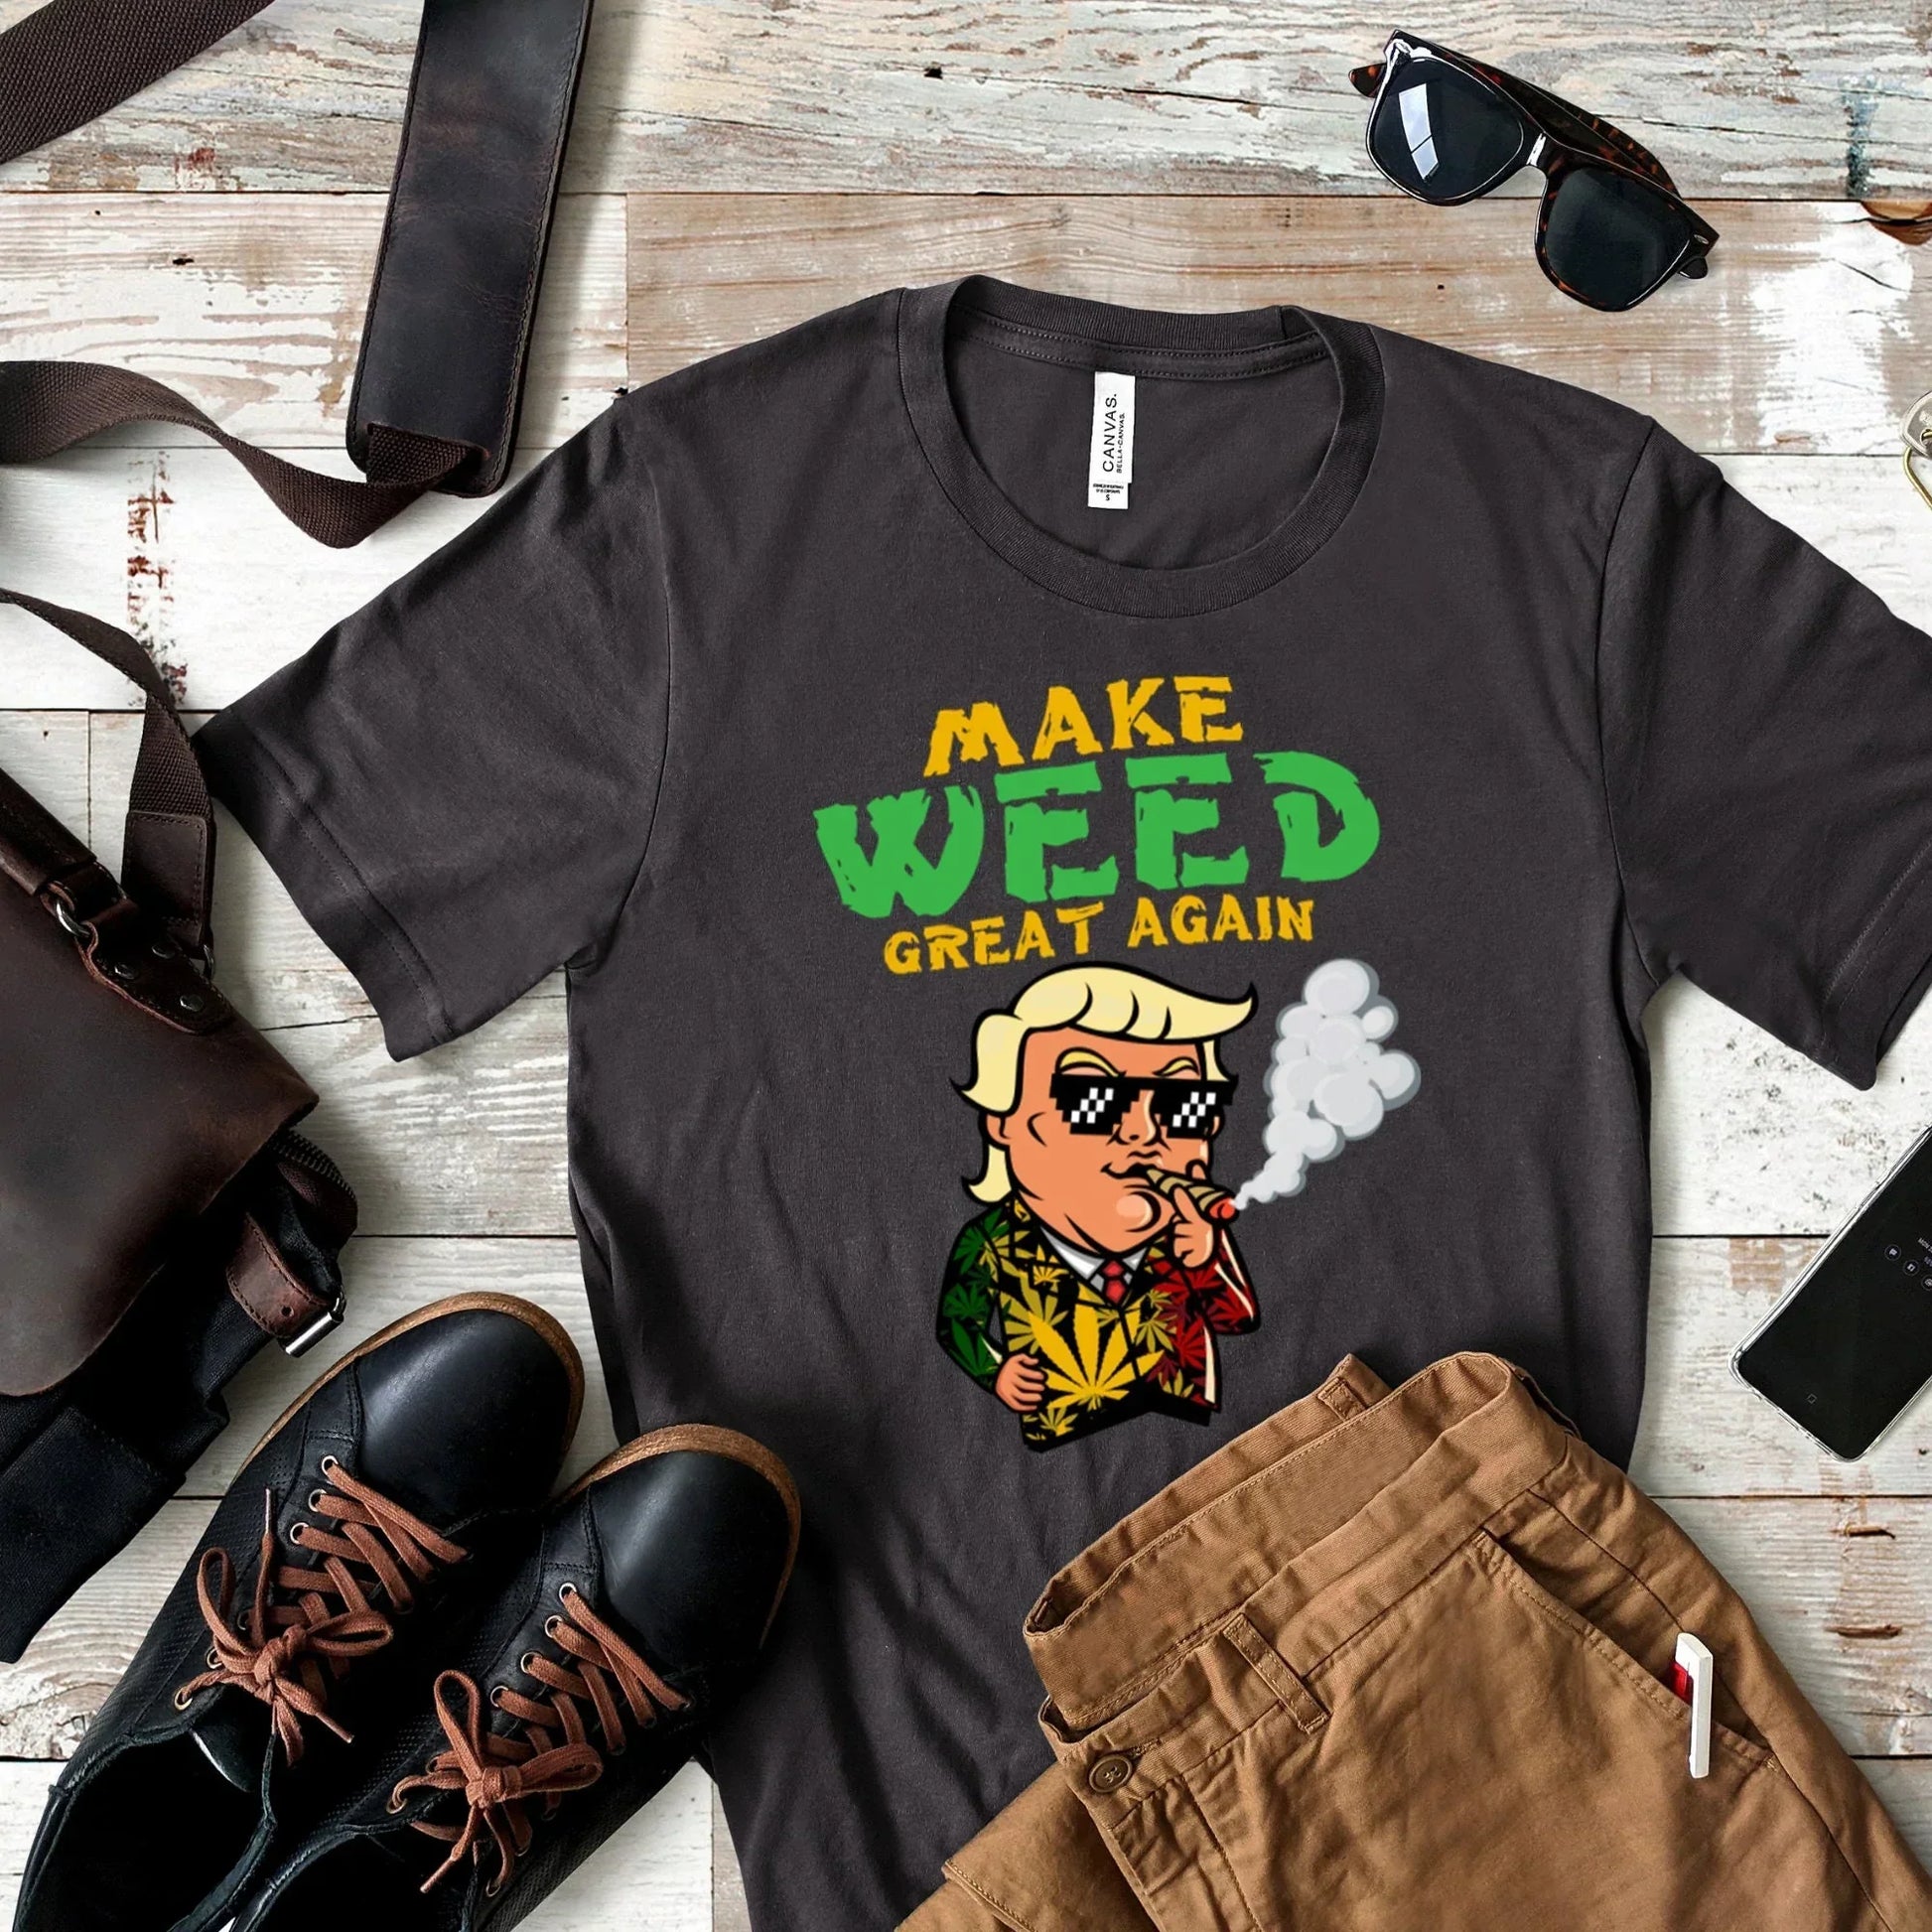 Make Weed Great Again, Funny Trump Shirt HMDesignStudioUS